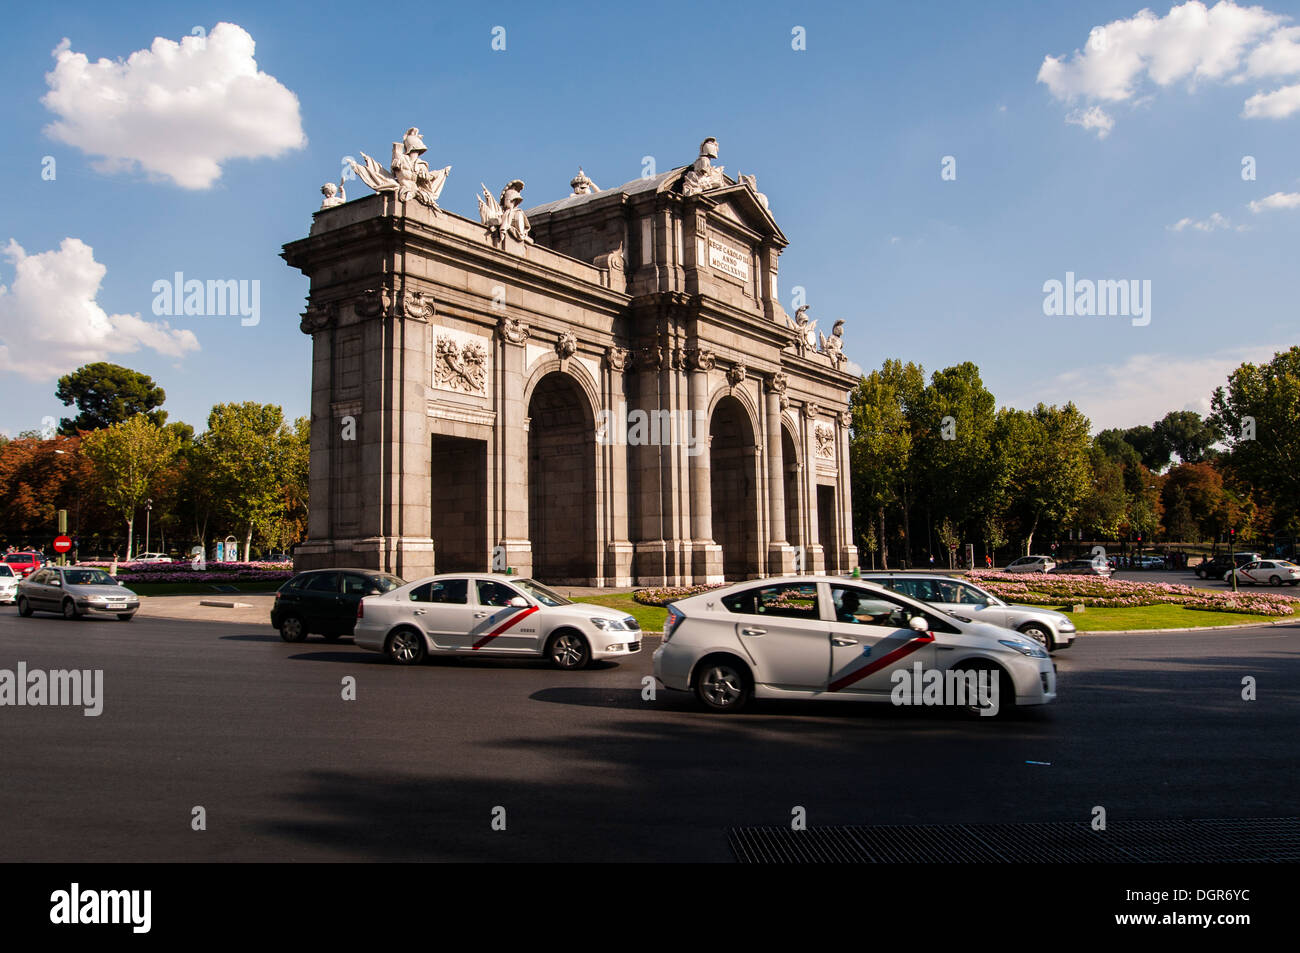 Puerta de Alcalá, Plaza de la Independencia, Madrid, España Stock Photo